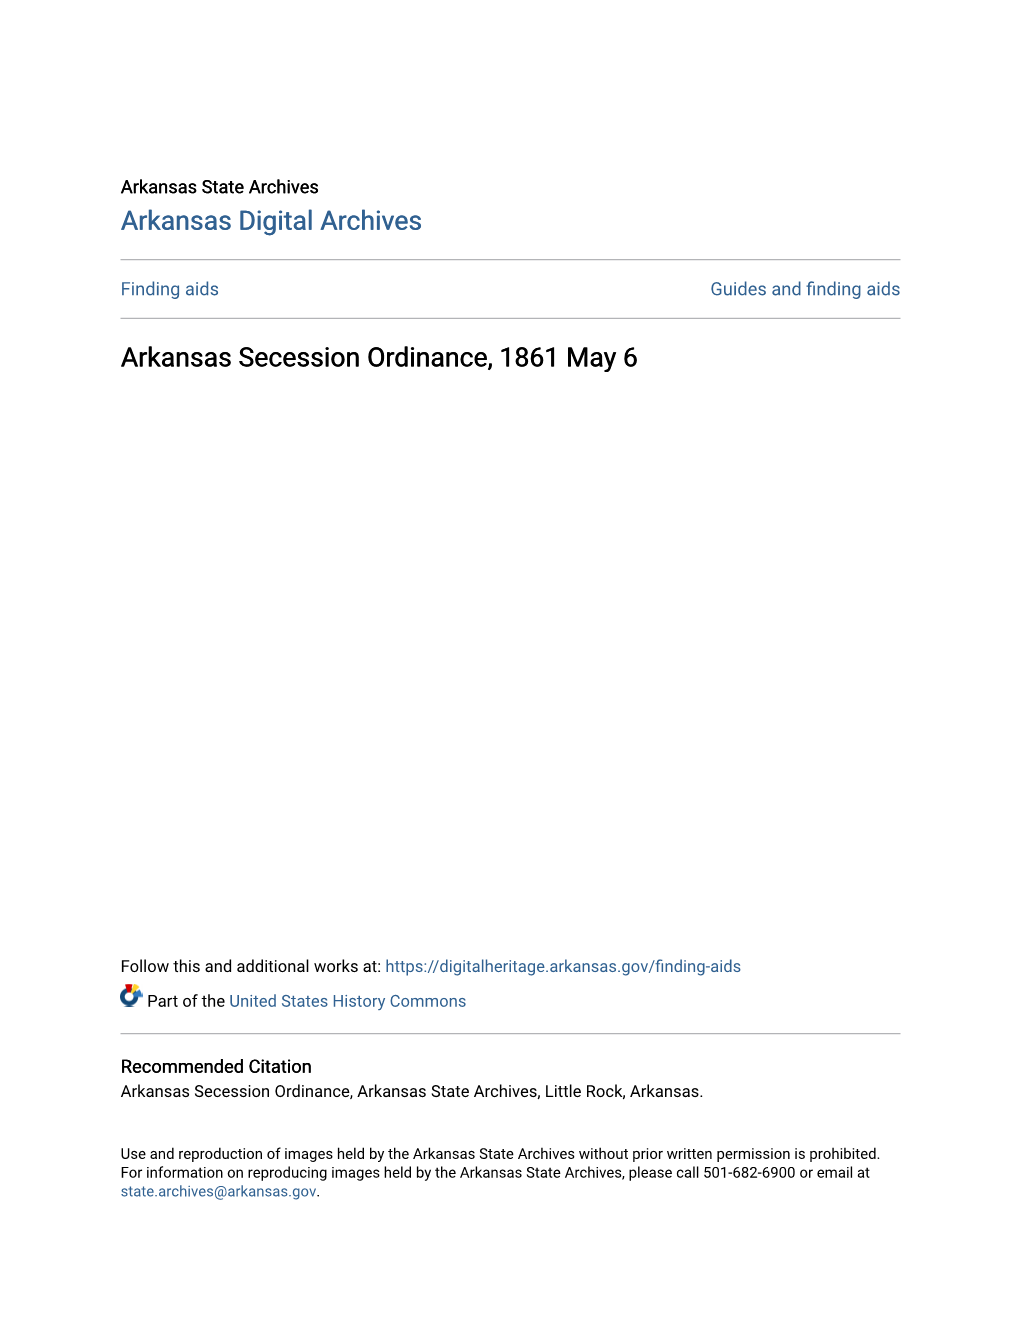 Arkansas Secession Ordinance, 1861 May 6